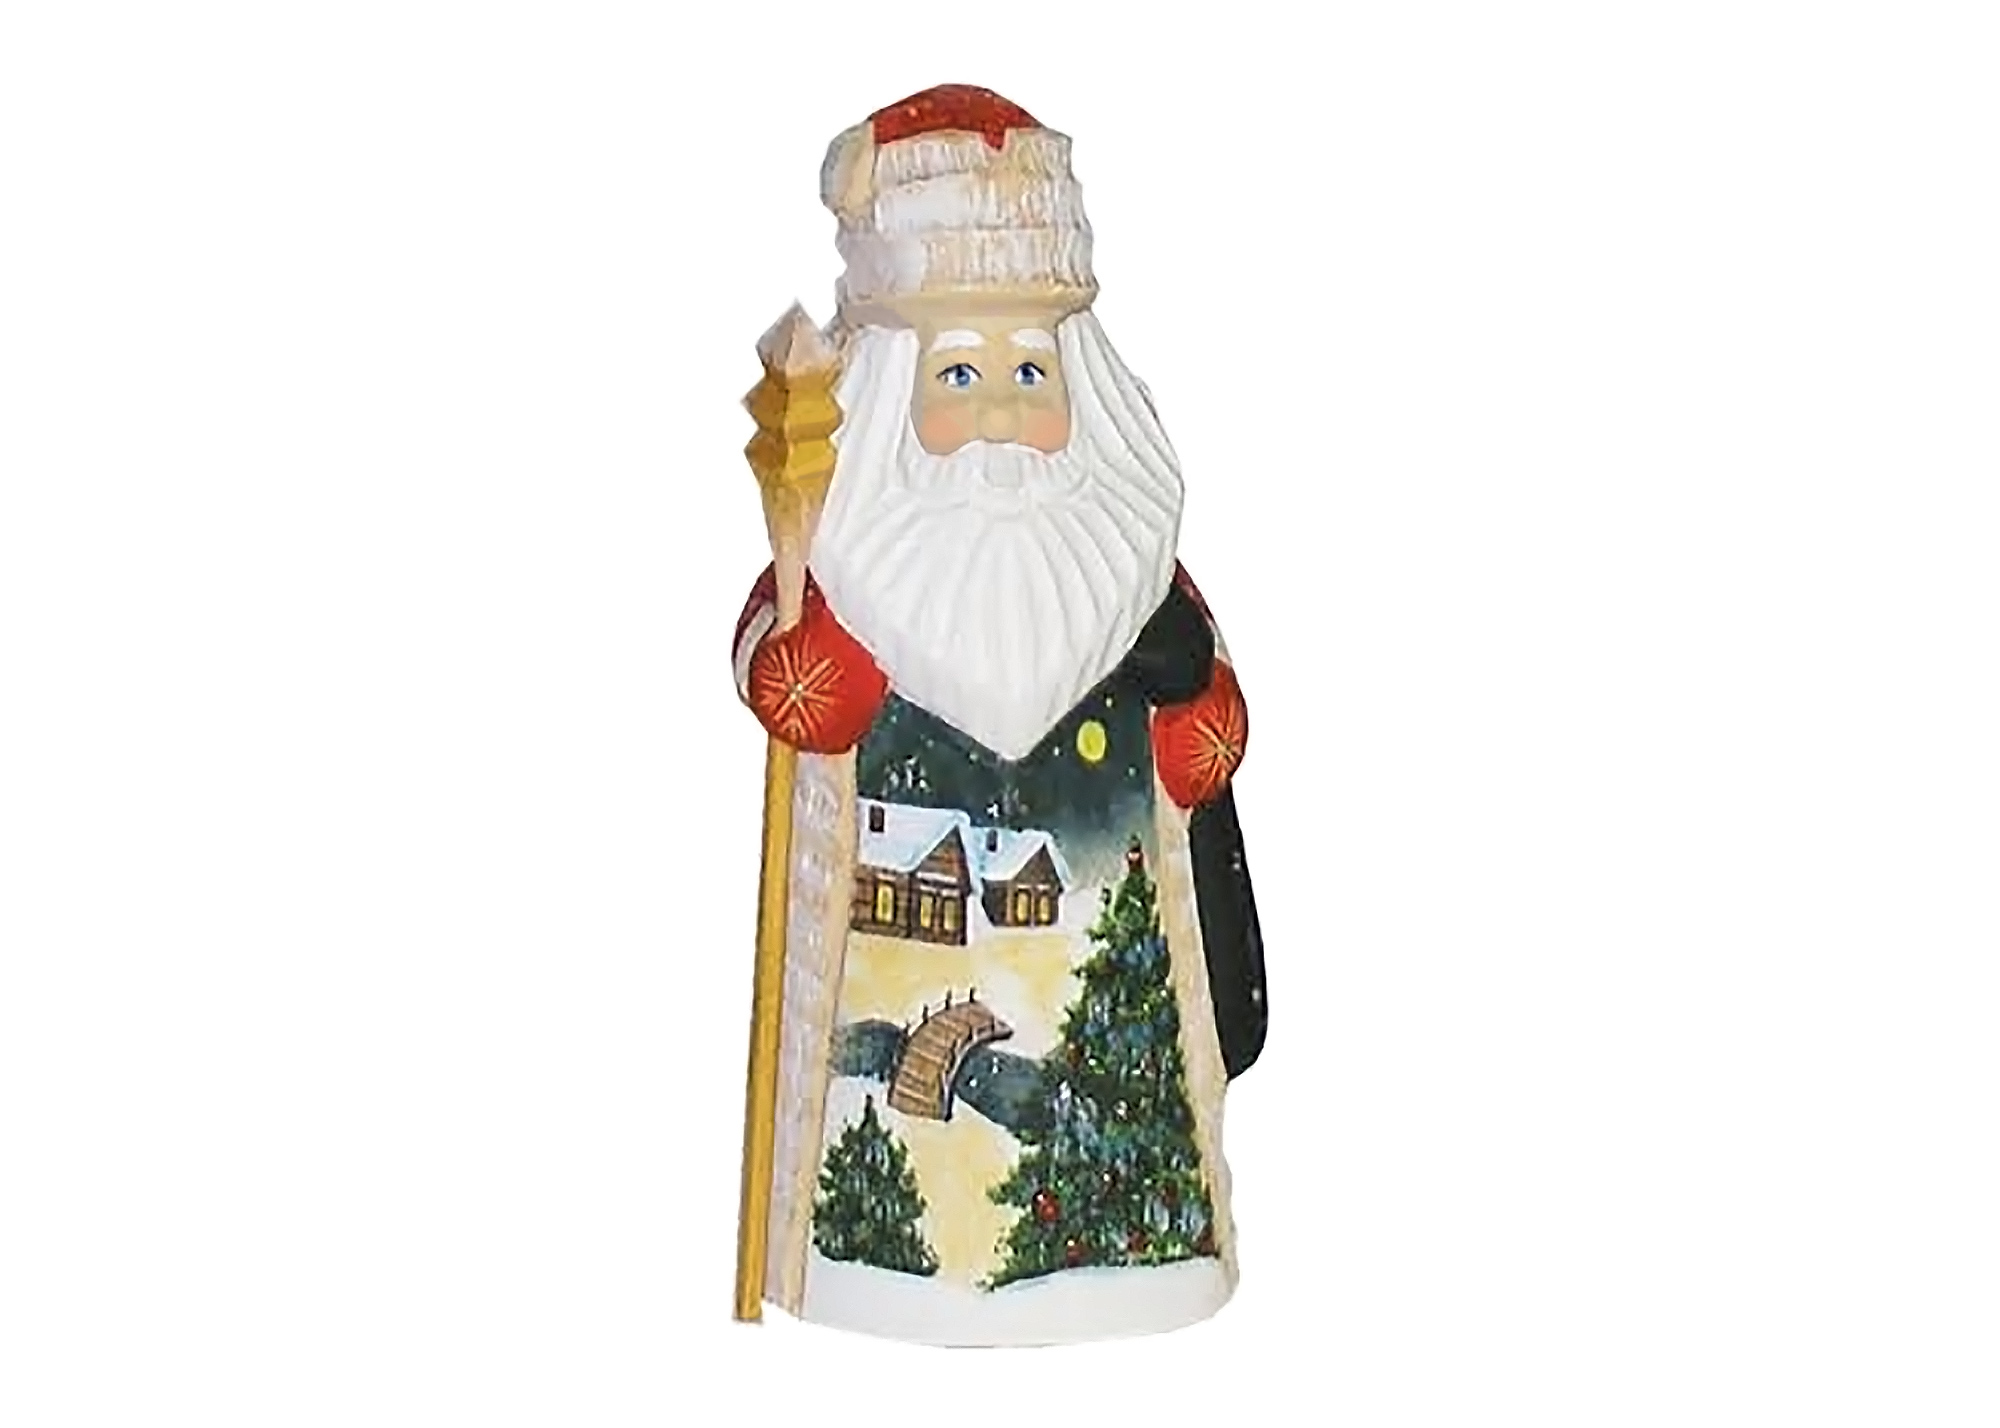 Buy Winter Landscape Carved Wooden Santa 5.5" at GoldenCockerel.com